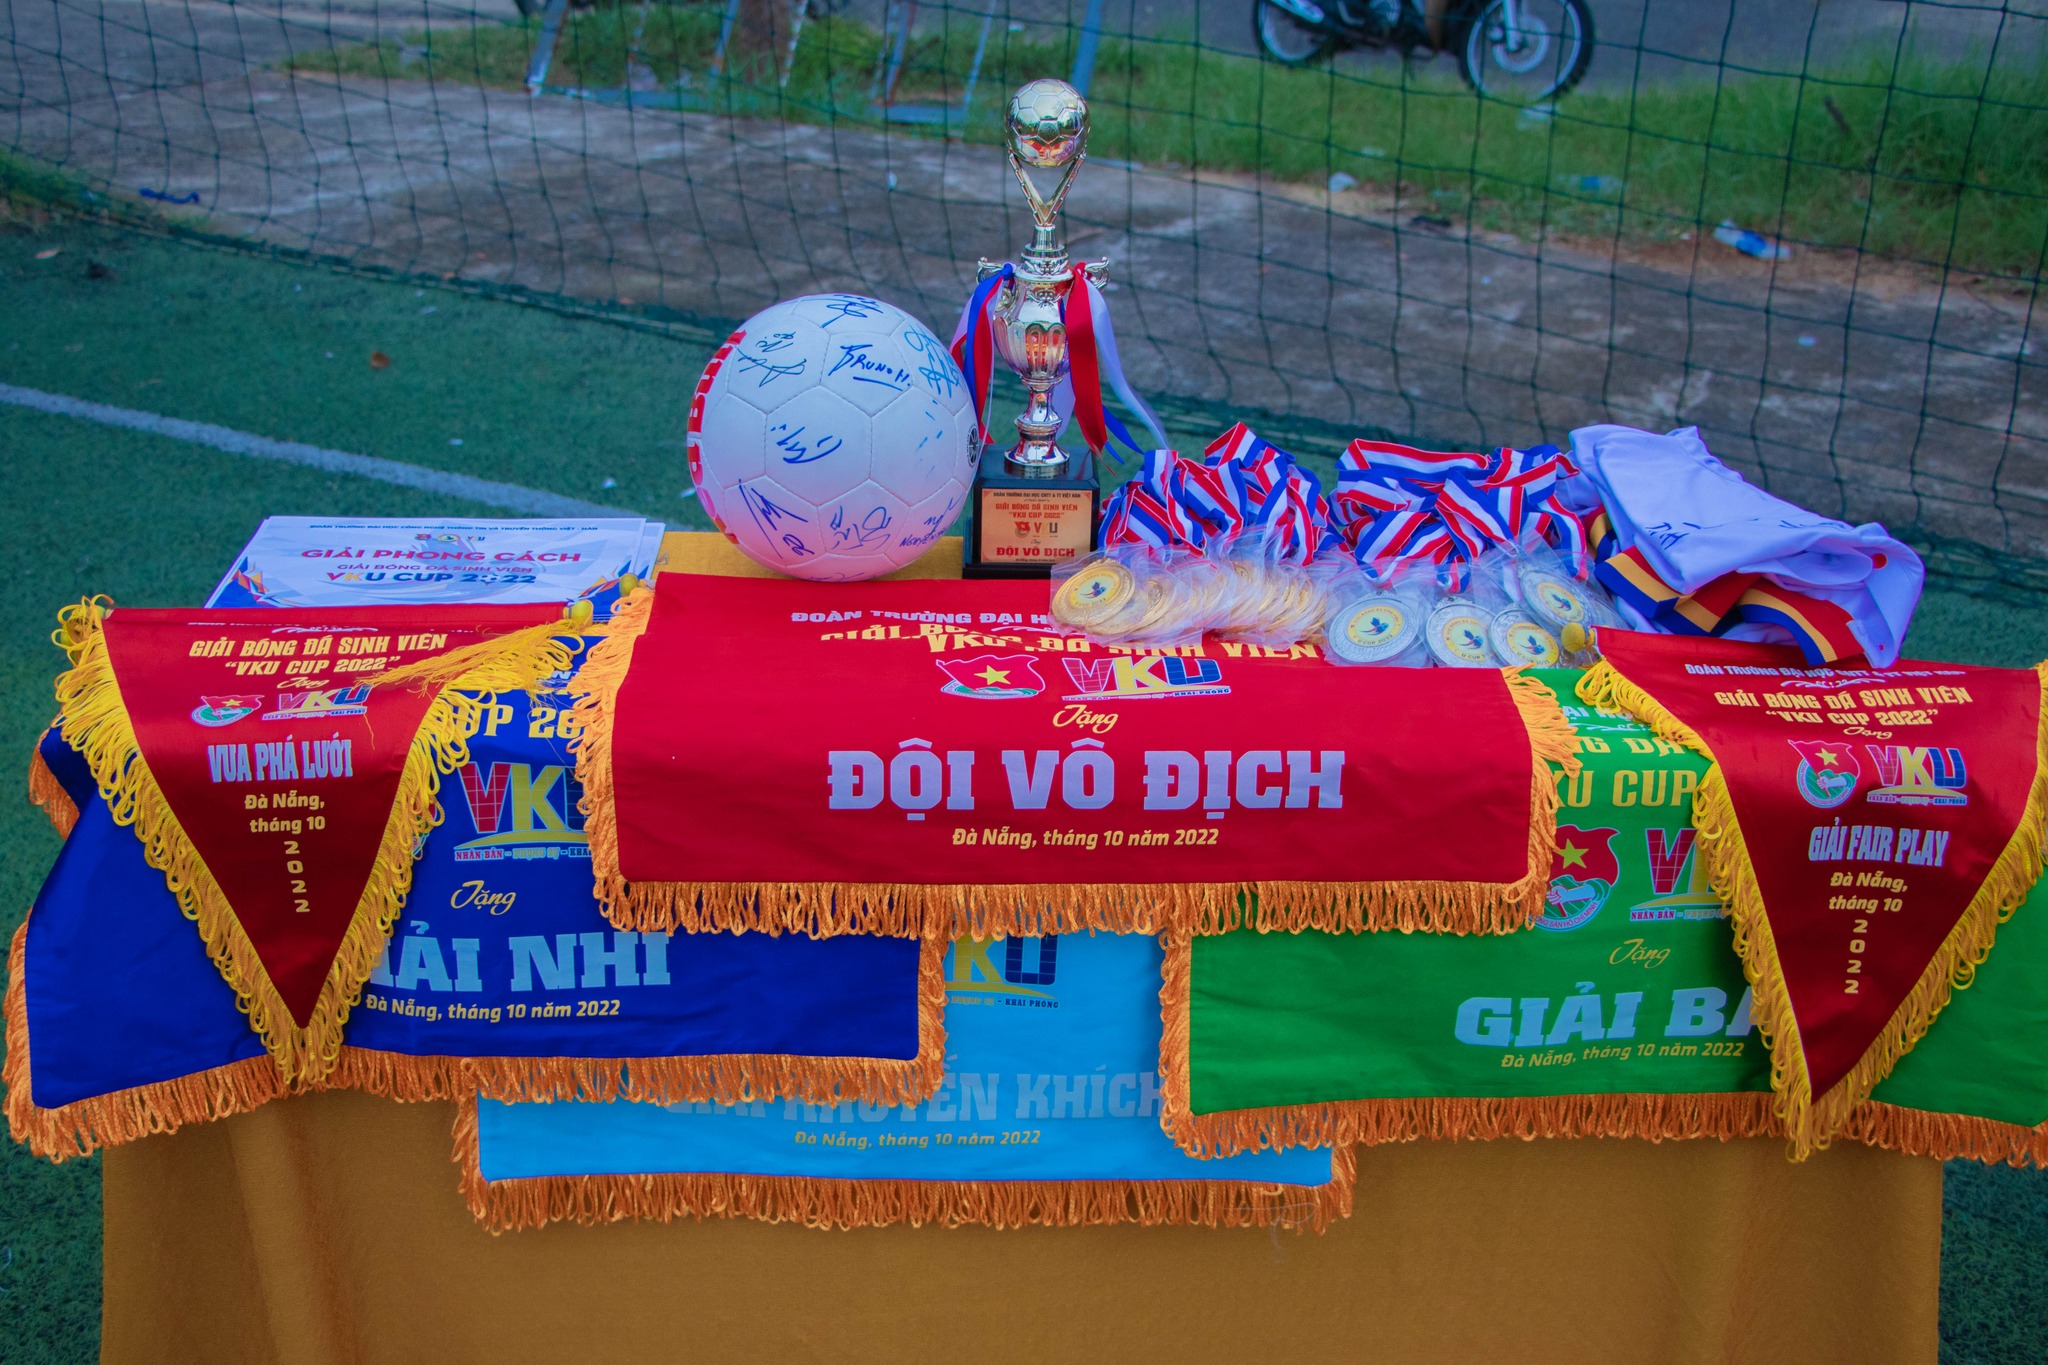 Đà Nẵng đăng cai vòng loại giải Bóng đá vô địch sinh viên Việt Nam khu vực Đà Nẵng - Thừa Thiên Huế